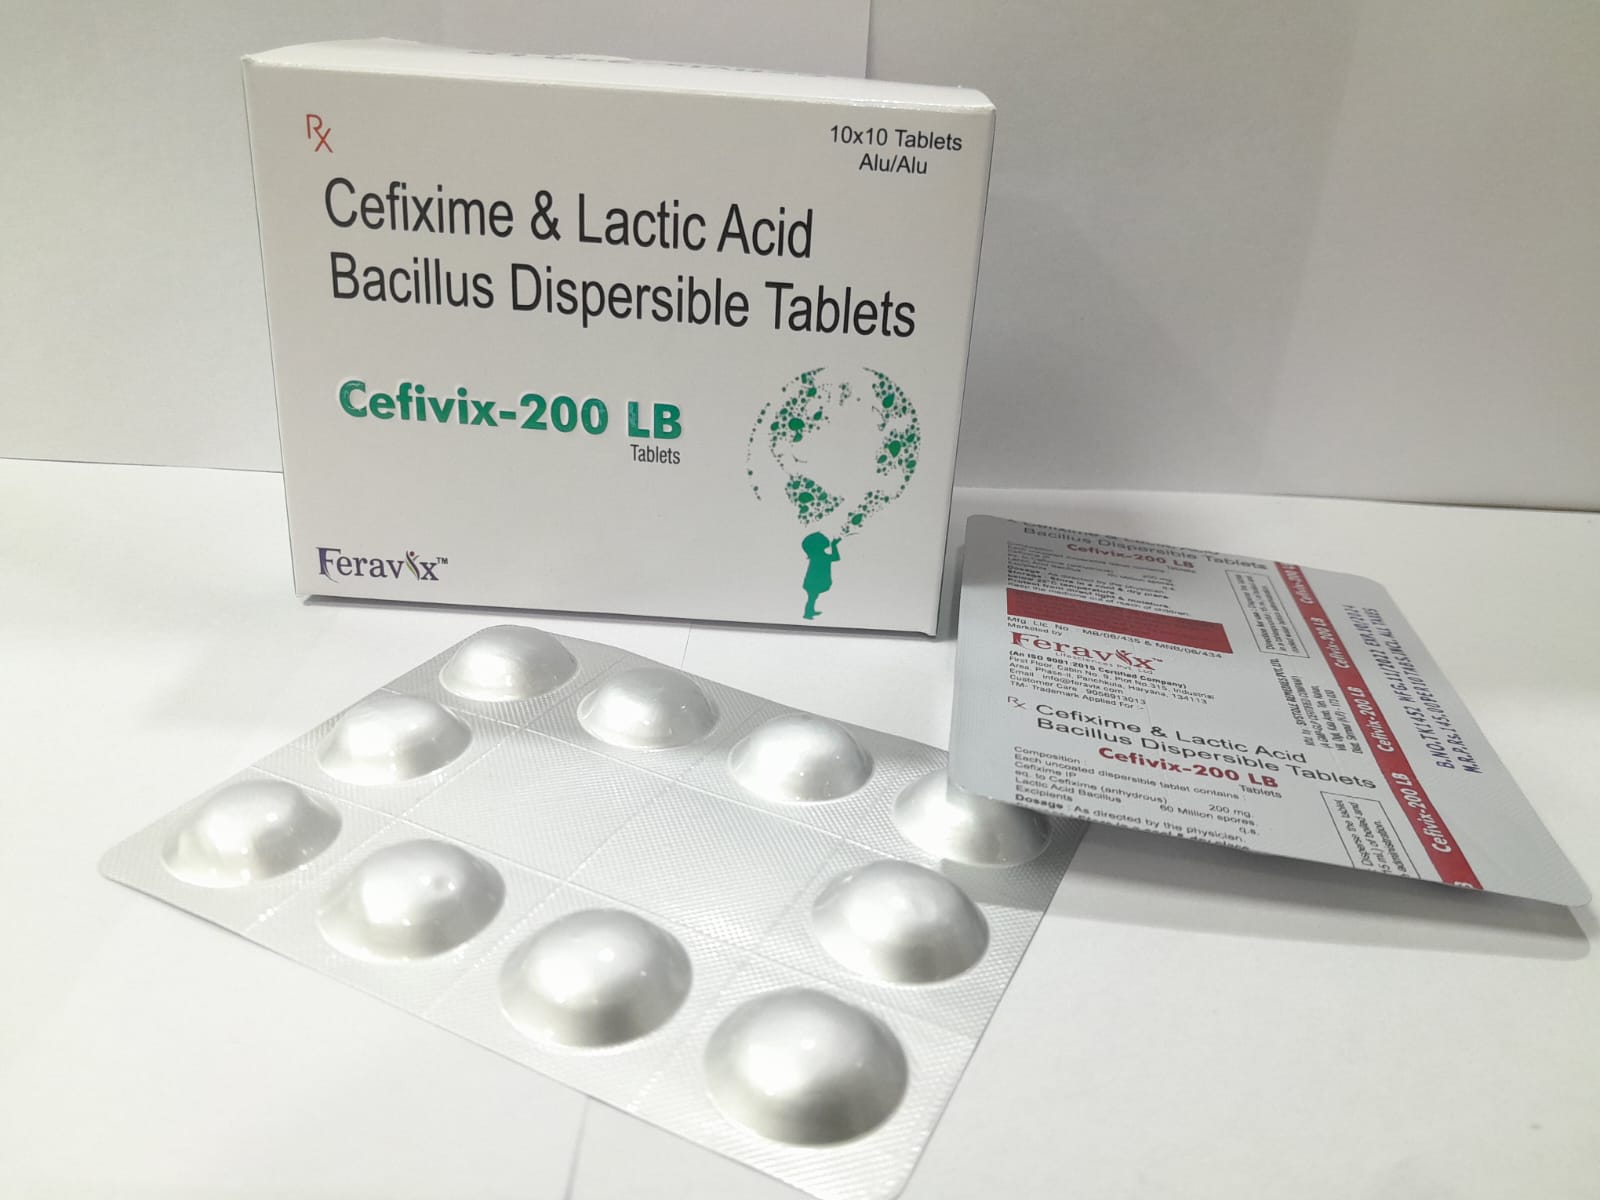 Product Name: CEFIVIX 200 LB Tablets, Compositions of CEFIVIX 200 LB Tablets are CEFIXIME 200MG, LACTIC ACID BACILLUS 60M - Feravix Lifesciences